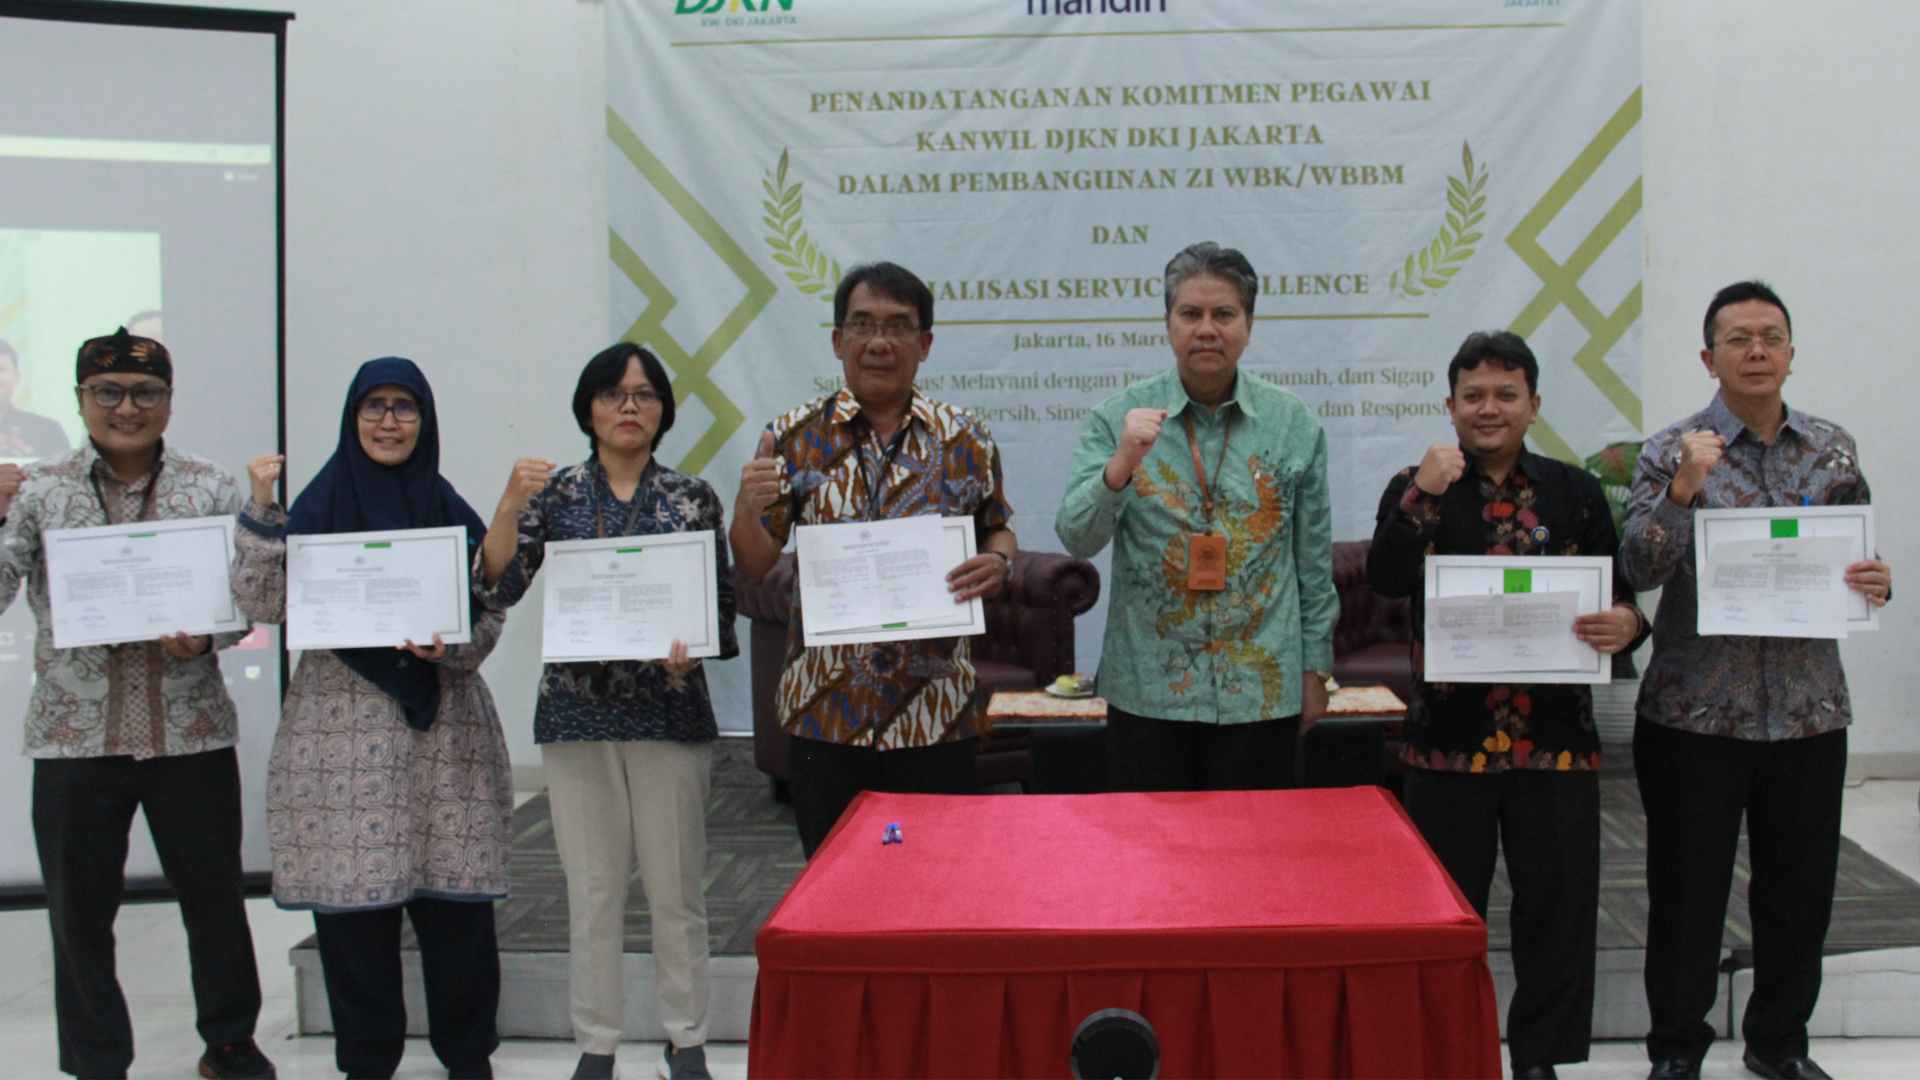 Penandatangan Maklumat Pelayanan, Pakta Integritas, dan Kebulatan Tekad Kanwil DJKN DKI Jakarta dalam Pembangunan ZI WBK-WBBM 2023